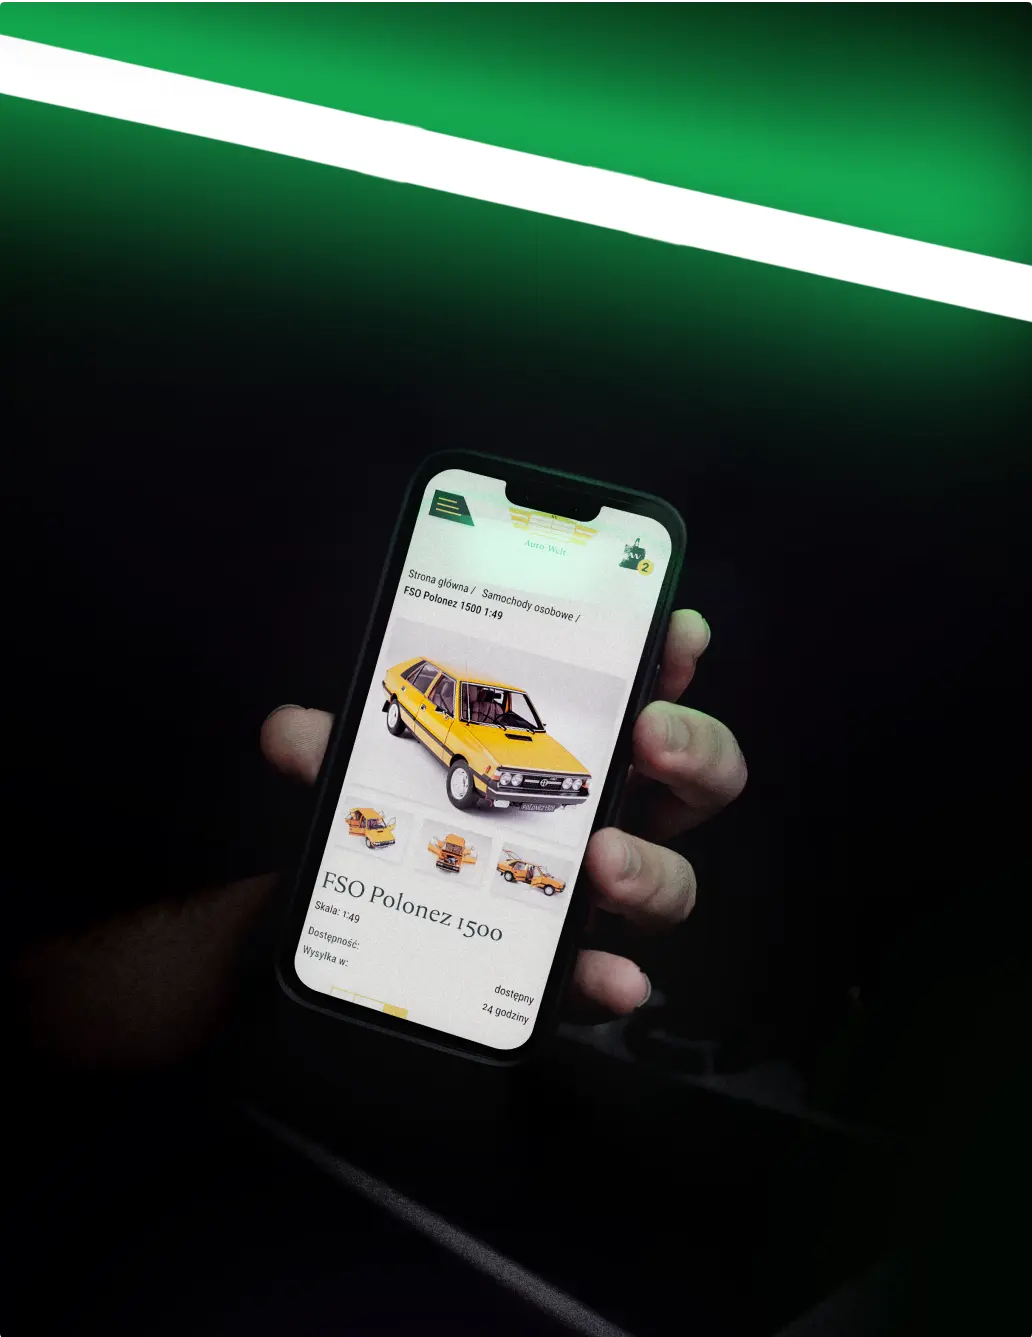 Sklep internetowy z samochodami kolekcjonerskimi na telefonie trzymany w ręce i zielonym neonowym tle